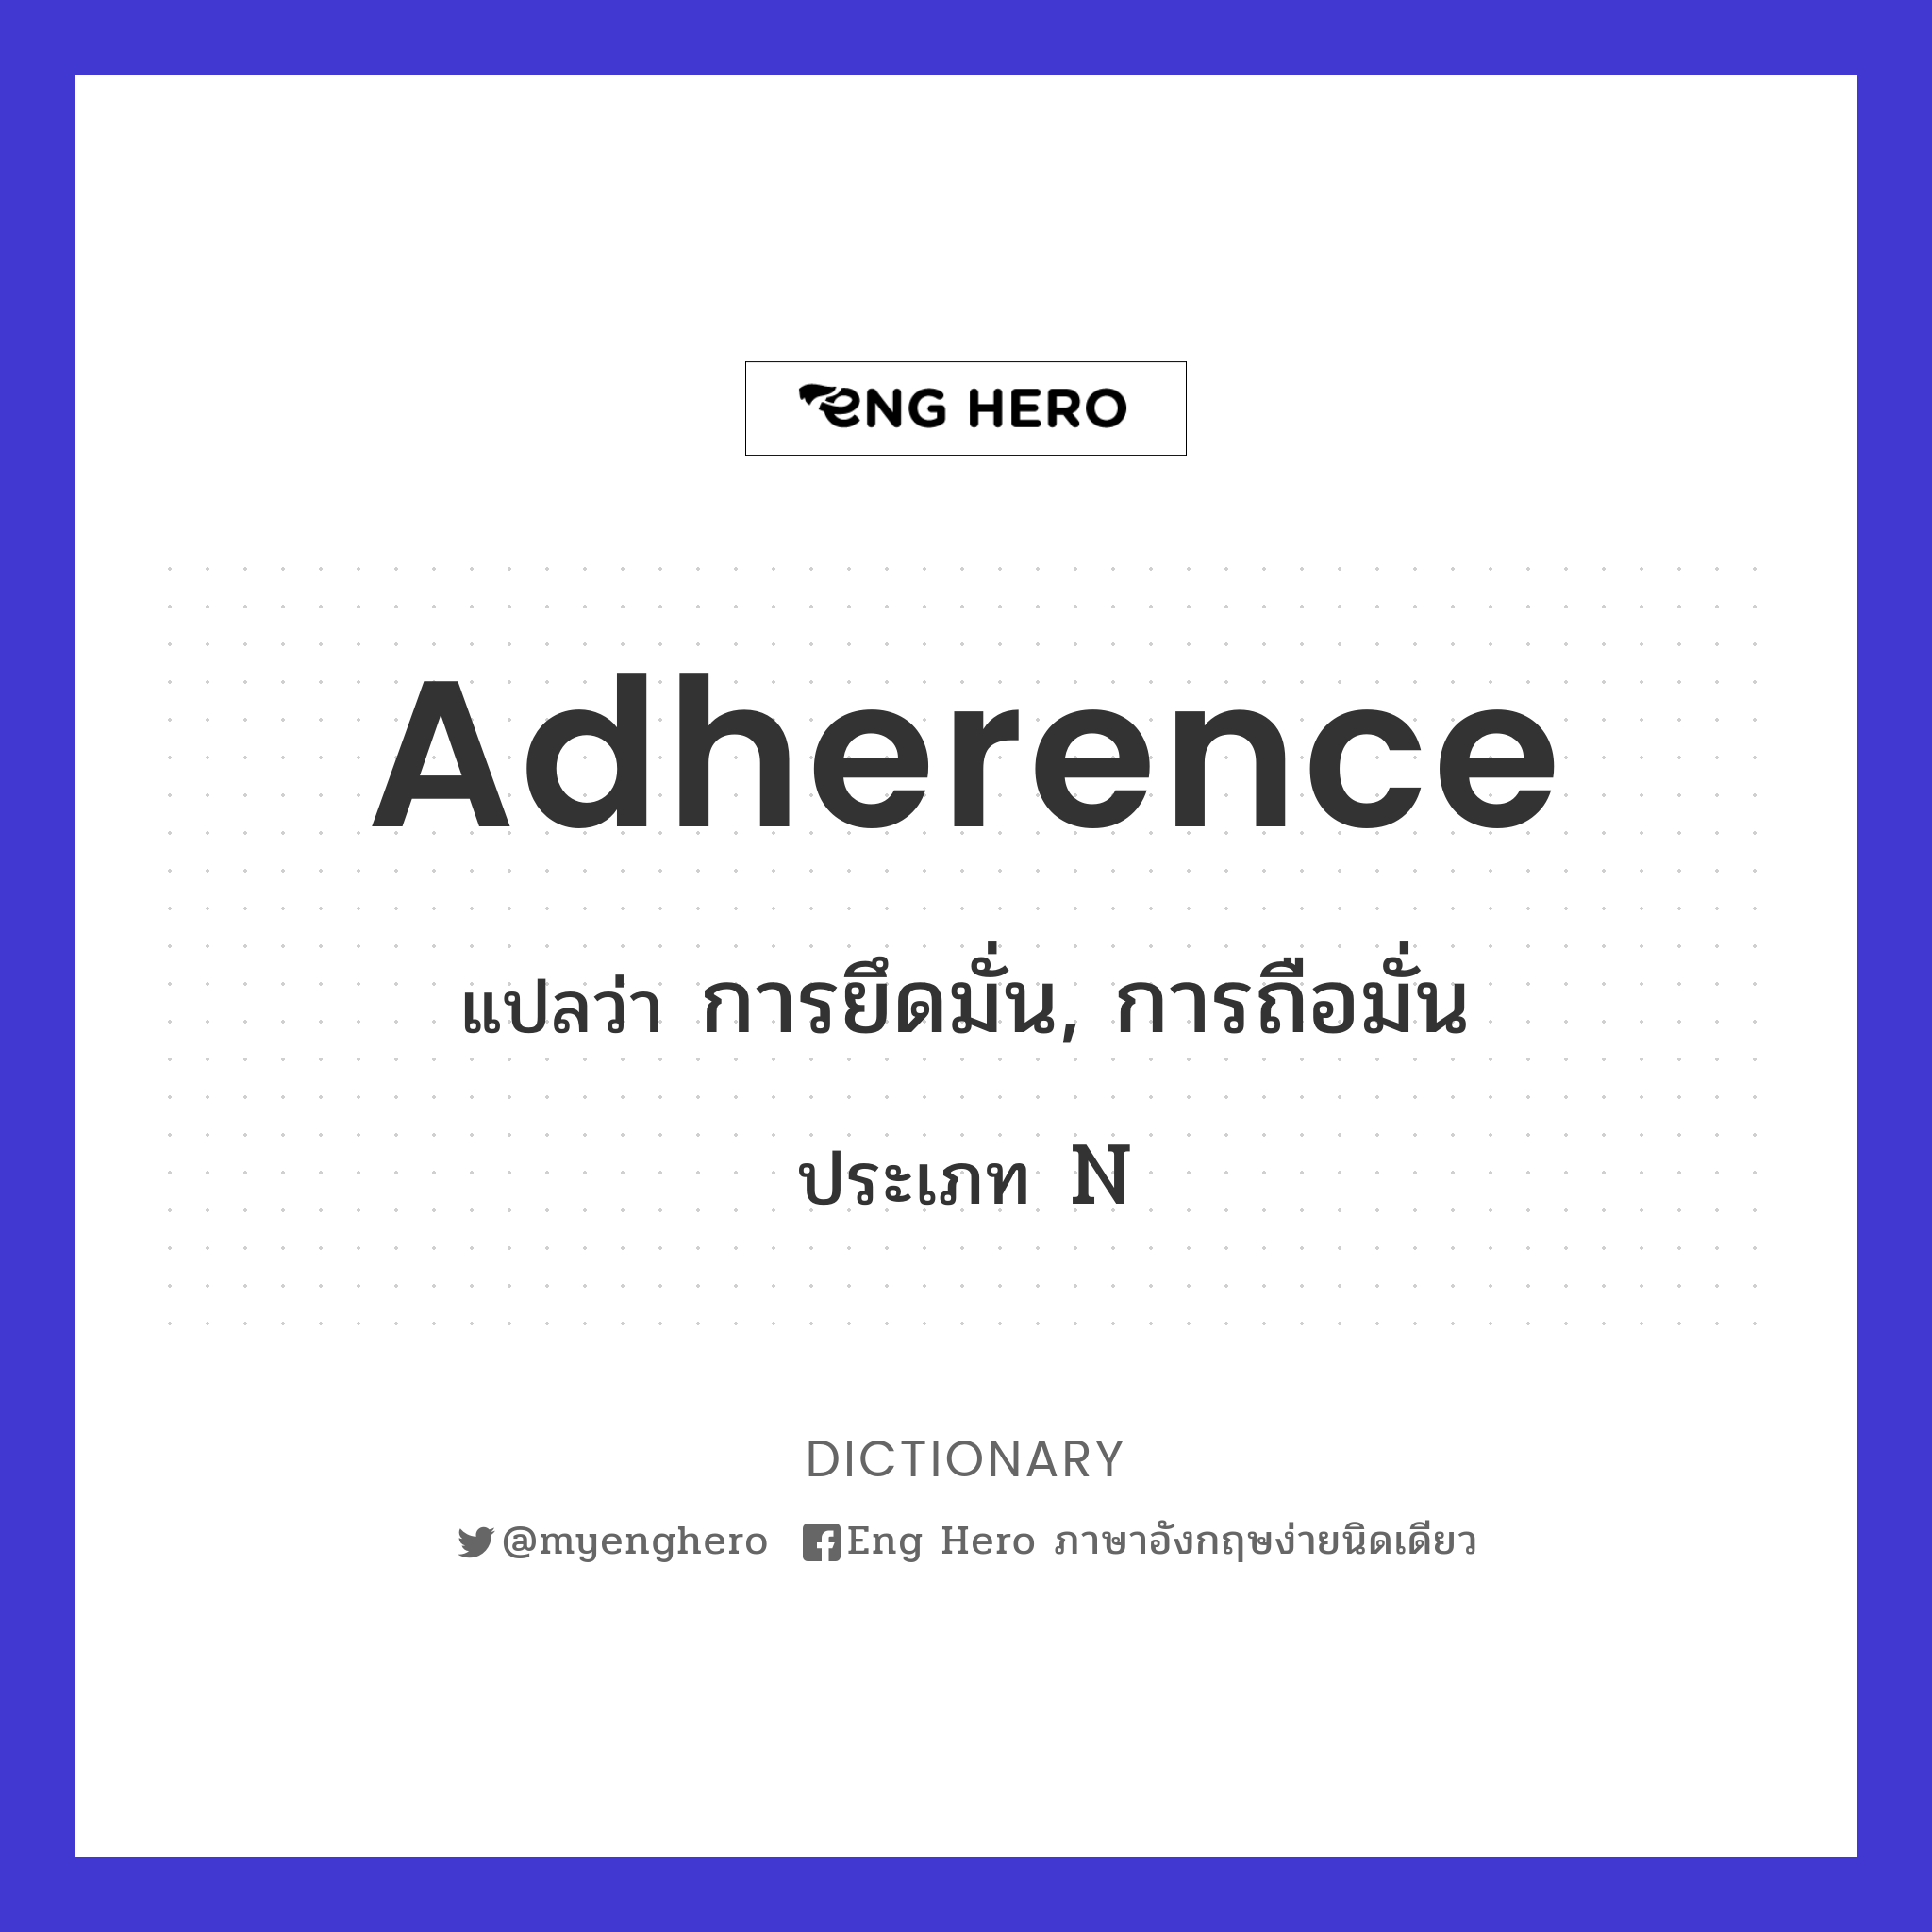 adherence